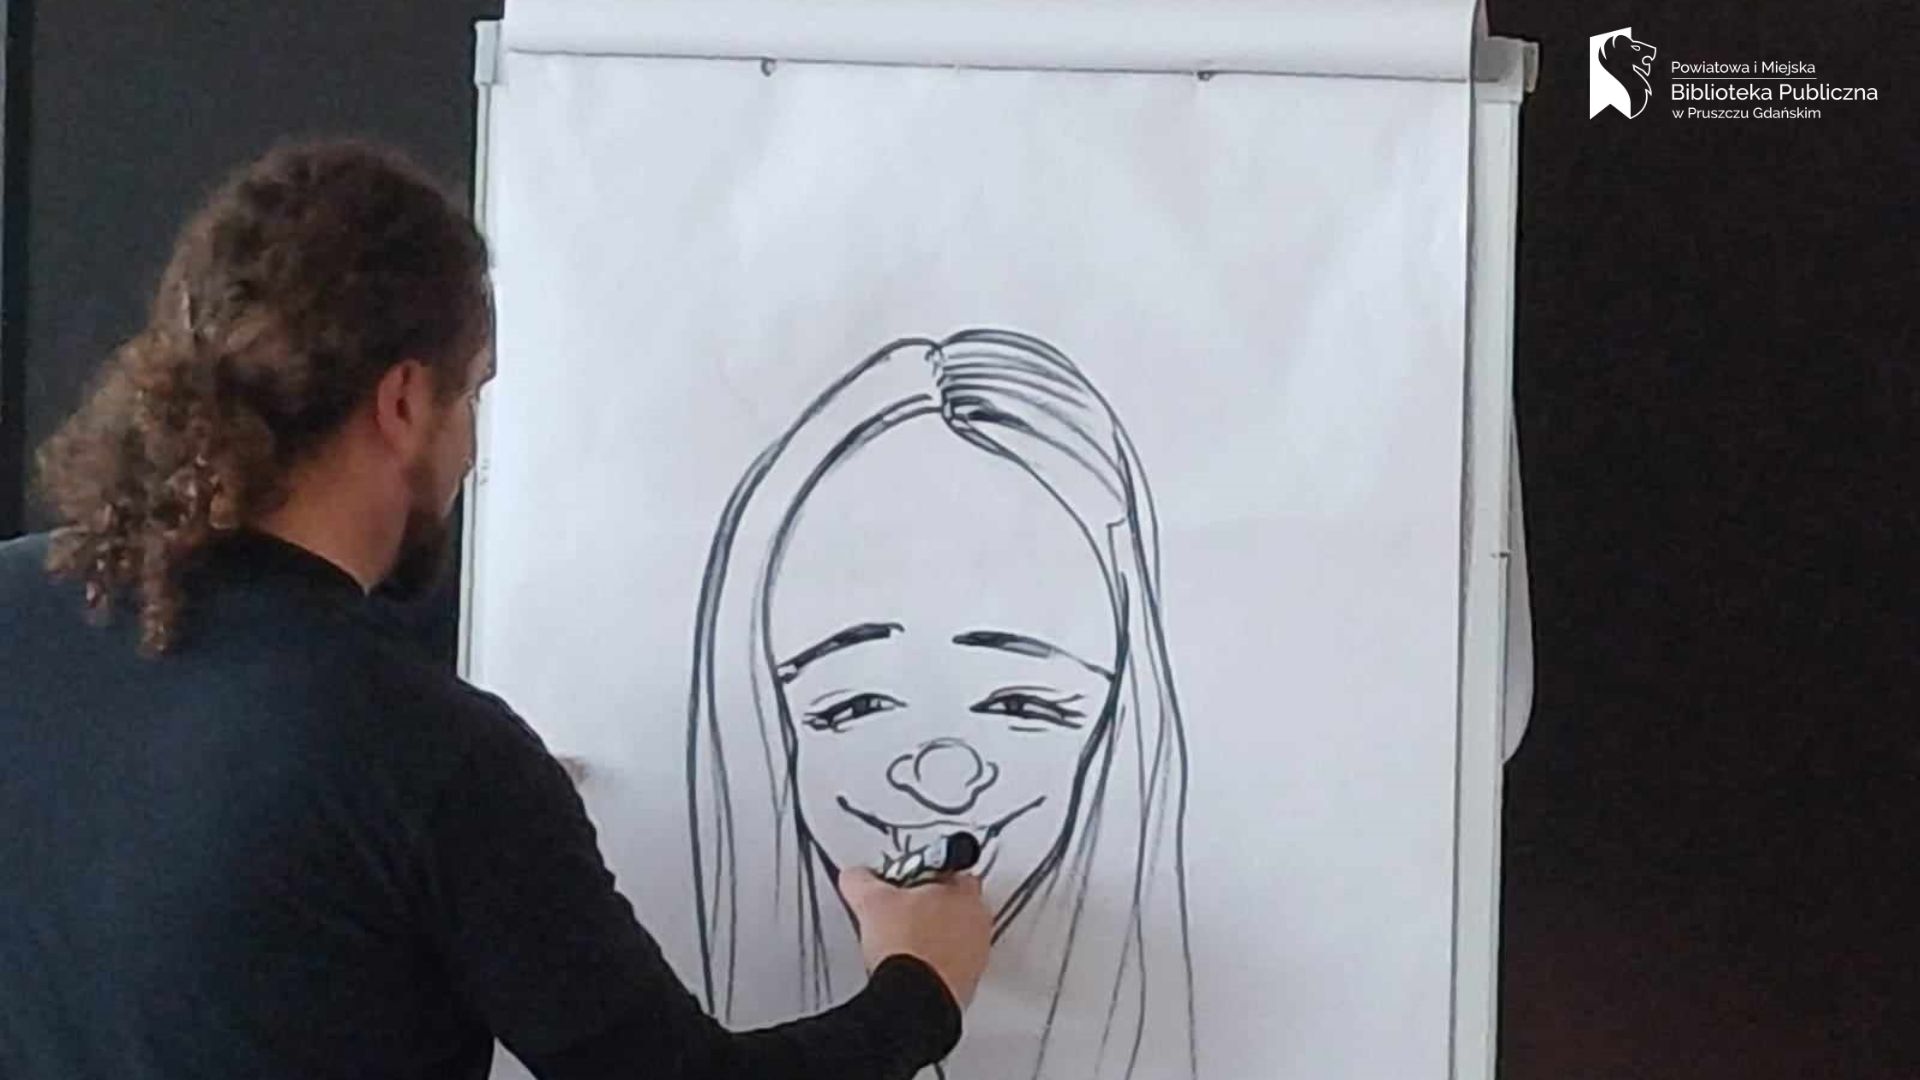 Szymon Teluk prezentuje narysowaną przez siebie, na białym papierze, twarz kobiety. Kobieta ma długie włosy i uśmiecha się.